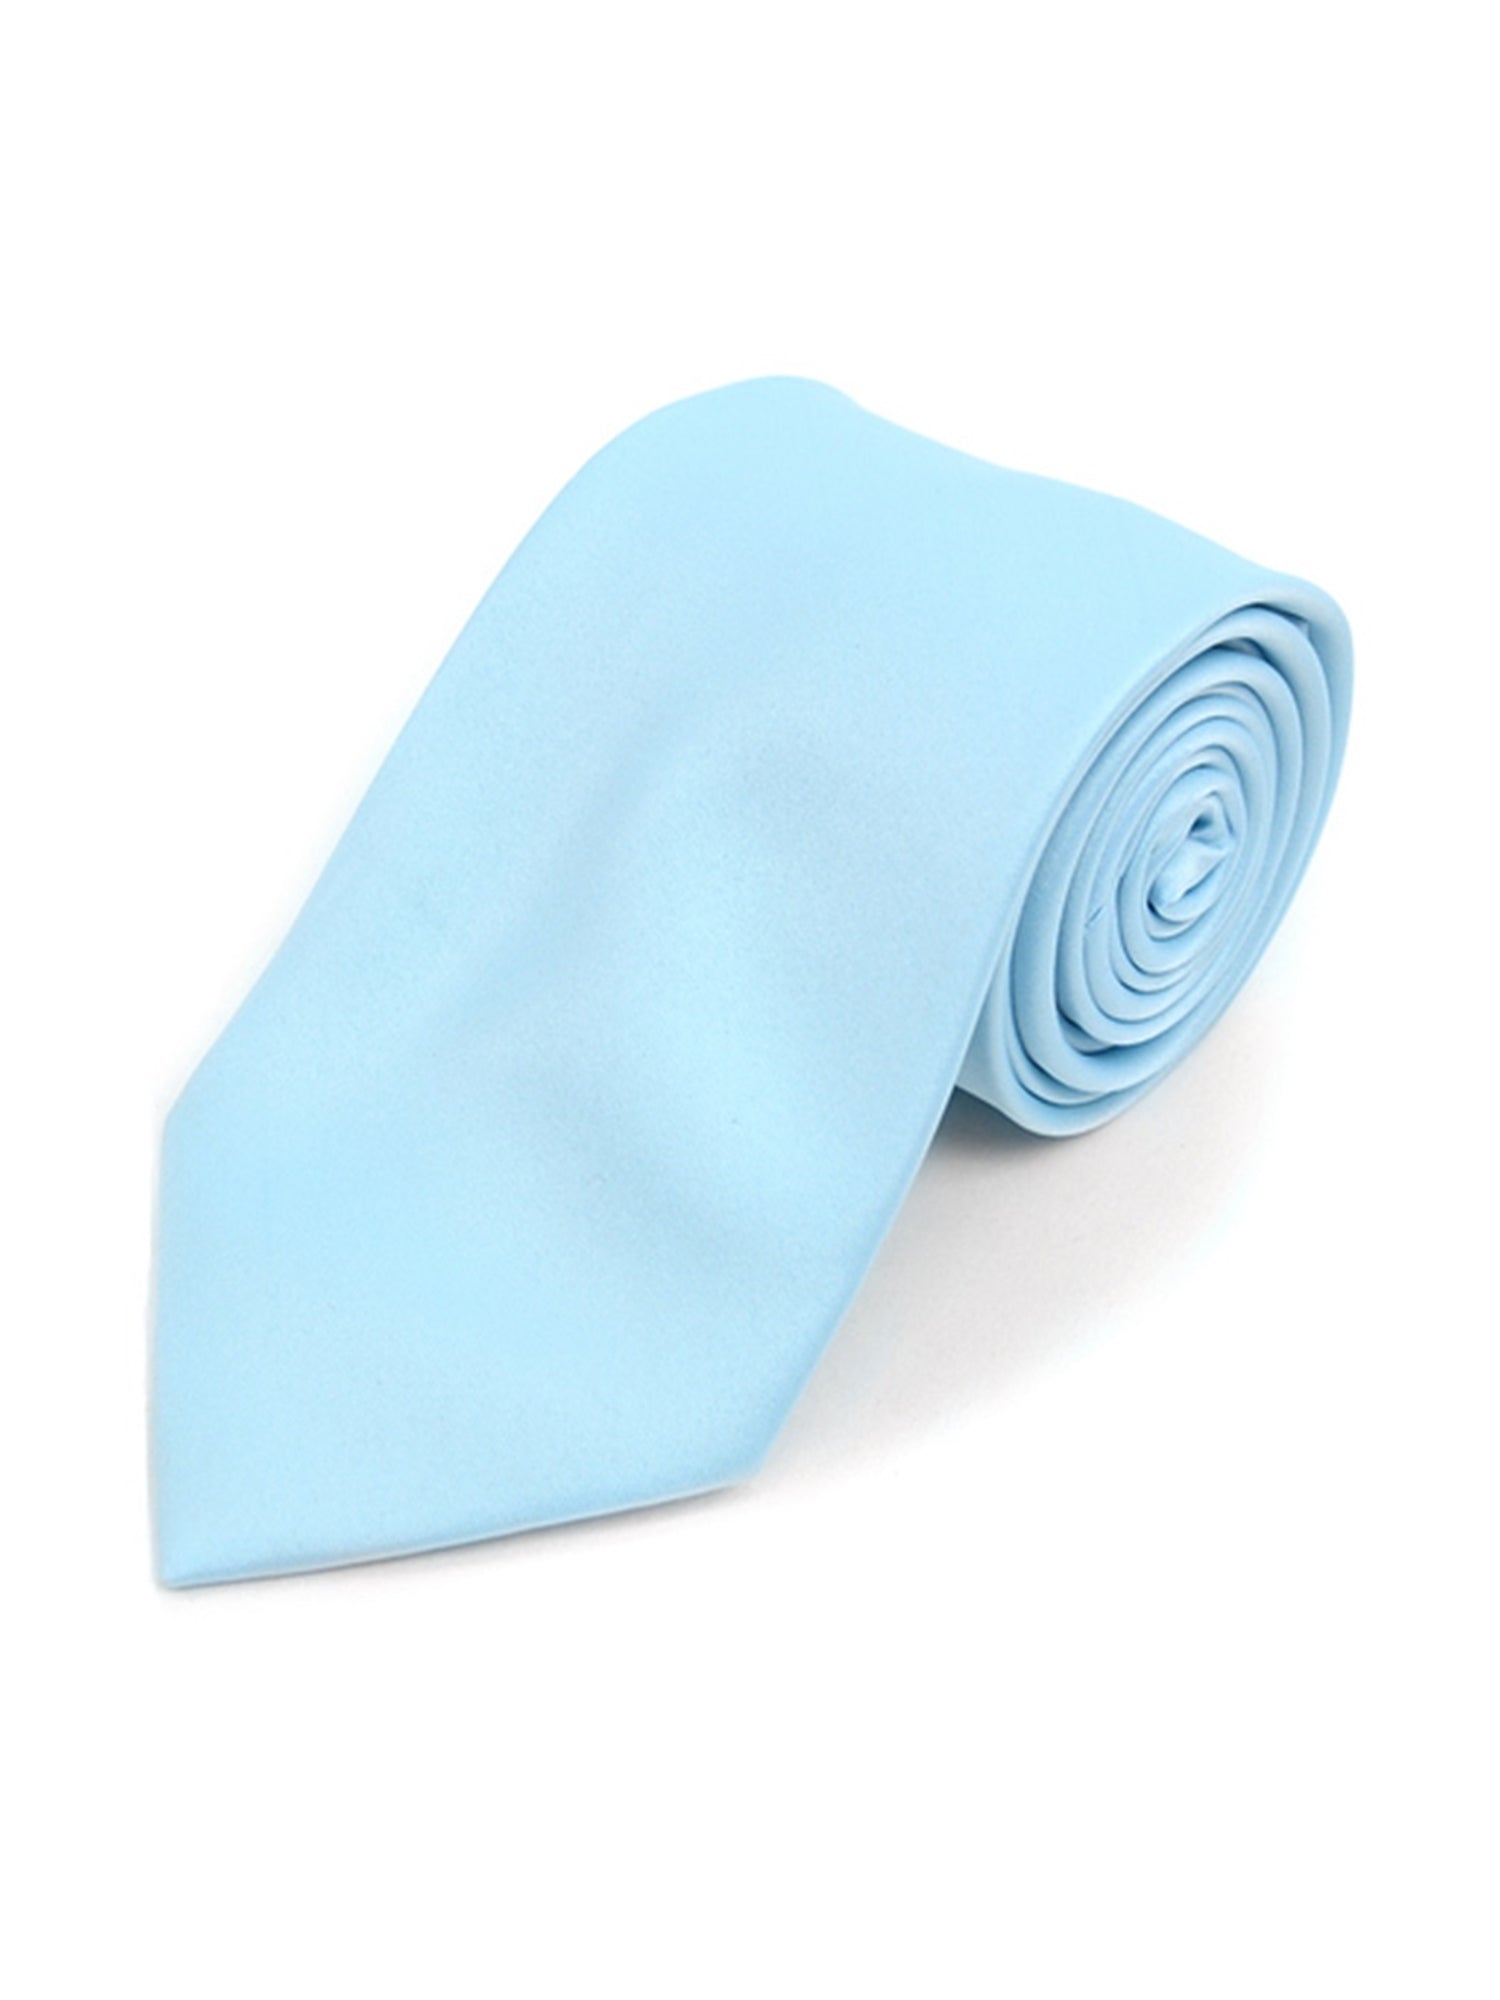 Boy's Age 12-18 Solid Color Poly Neck Tie Boy's Solid Color Neck Tie TheDapperTie Baby Blue 49" 